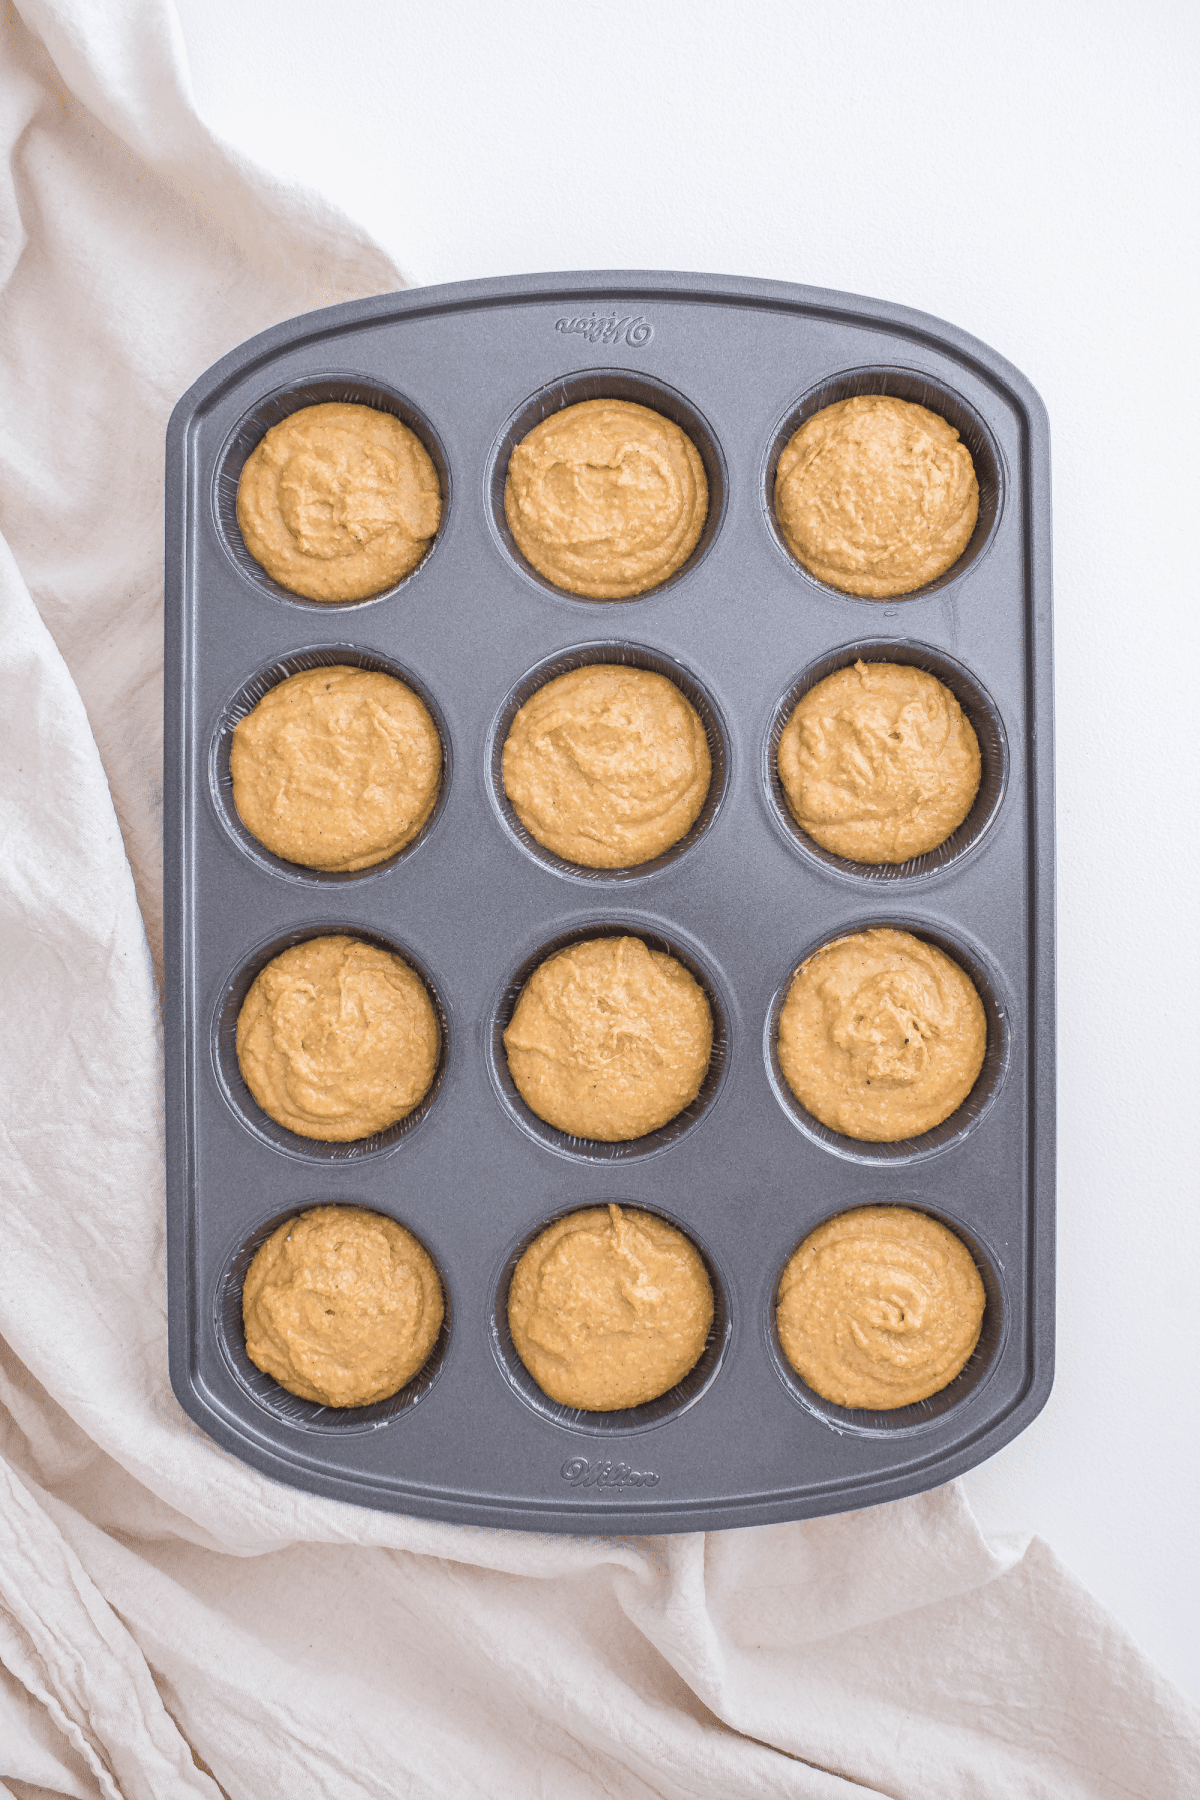 Pumpkin oatmeal muffin batter in muffin pan